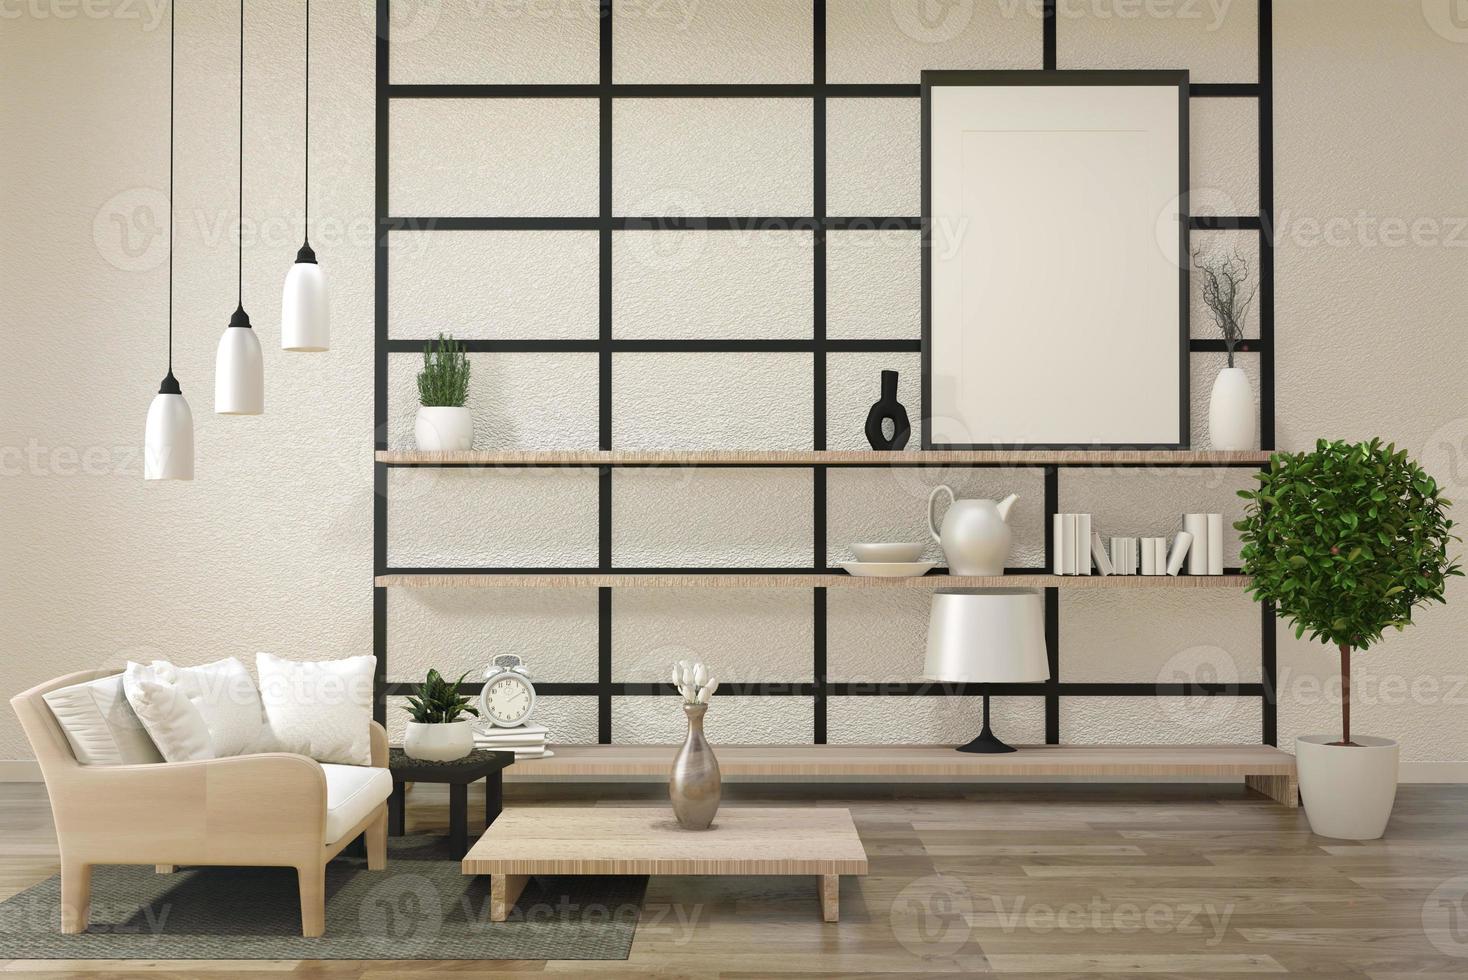 soggiorno zen moderno e minimalista con pavimento in legno e arredamento in stile giapponese. Rendering 3d foto